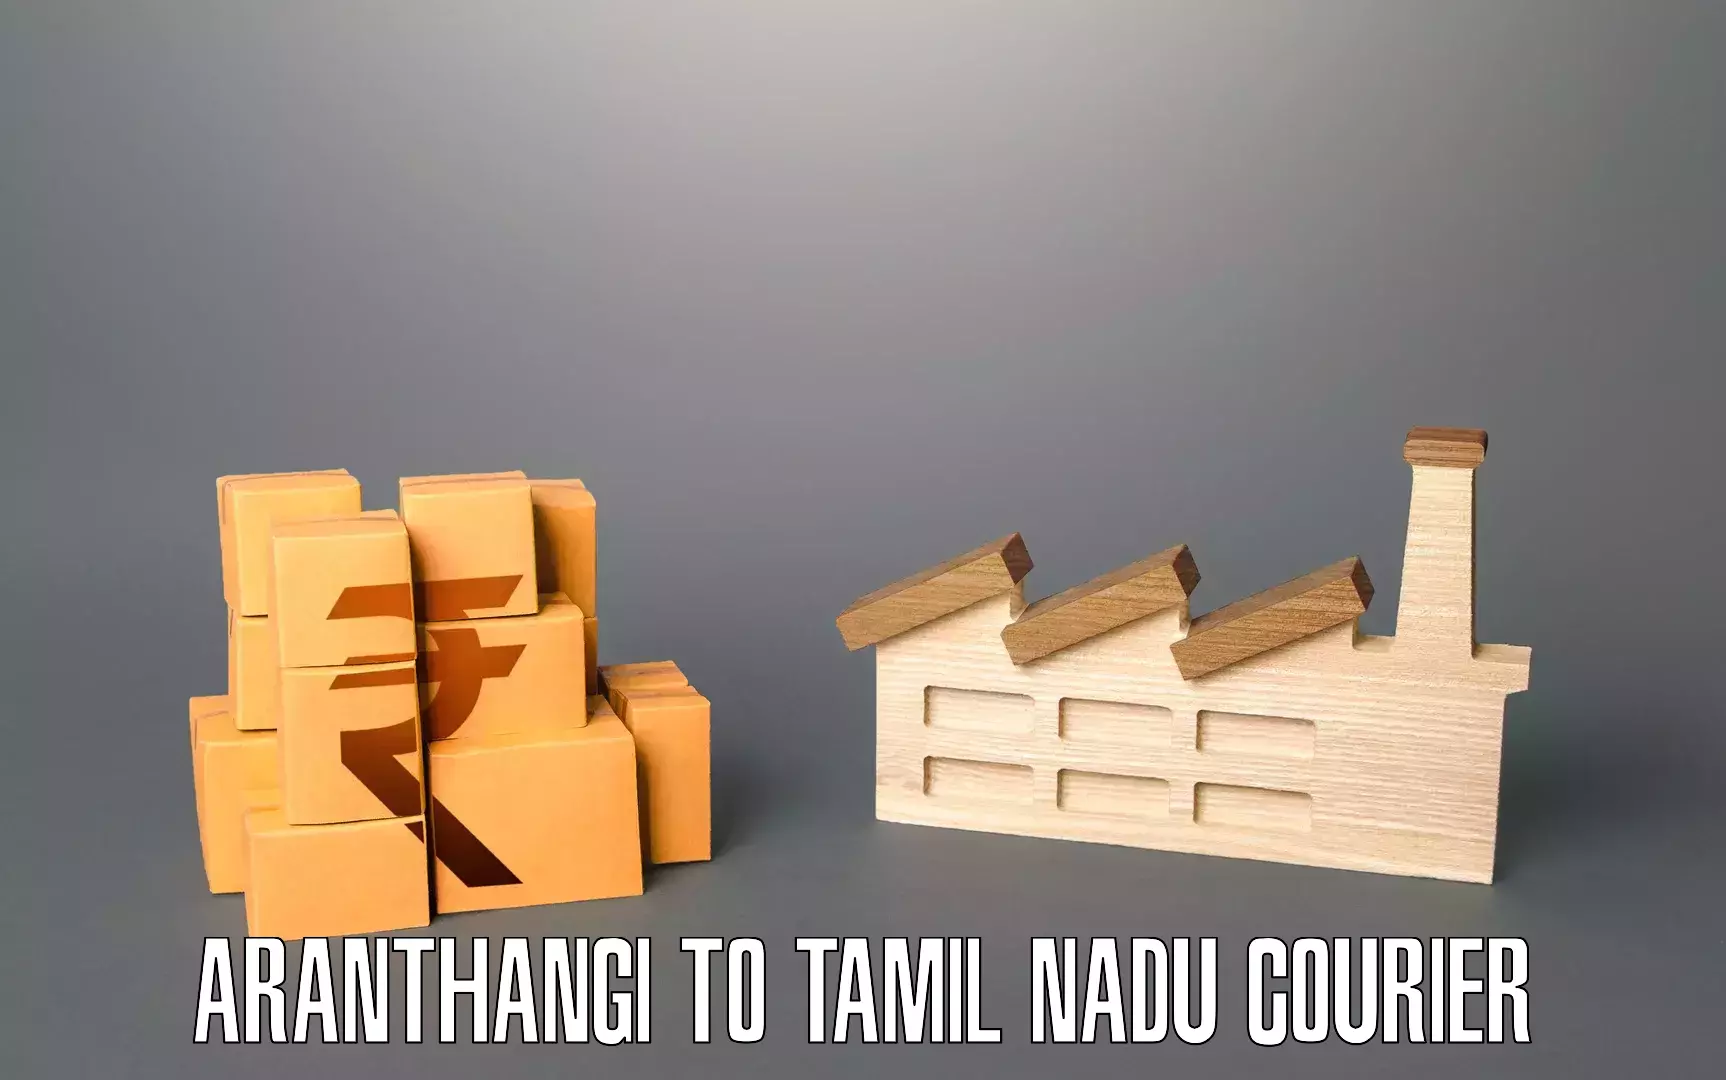 Furniture transport service Aranthangi to Avadi